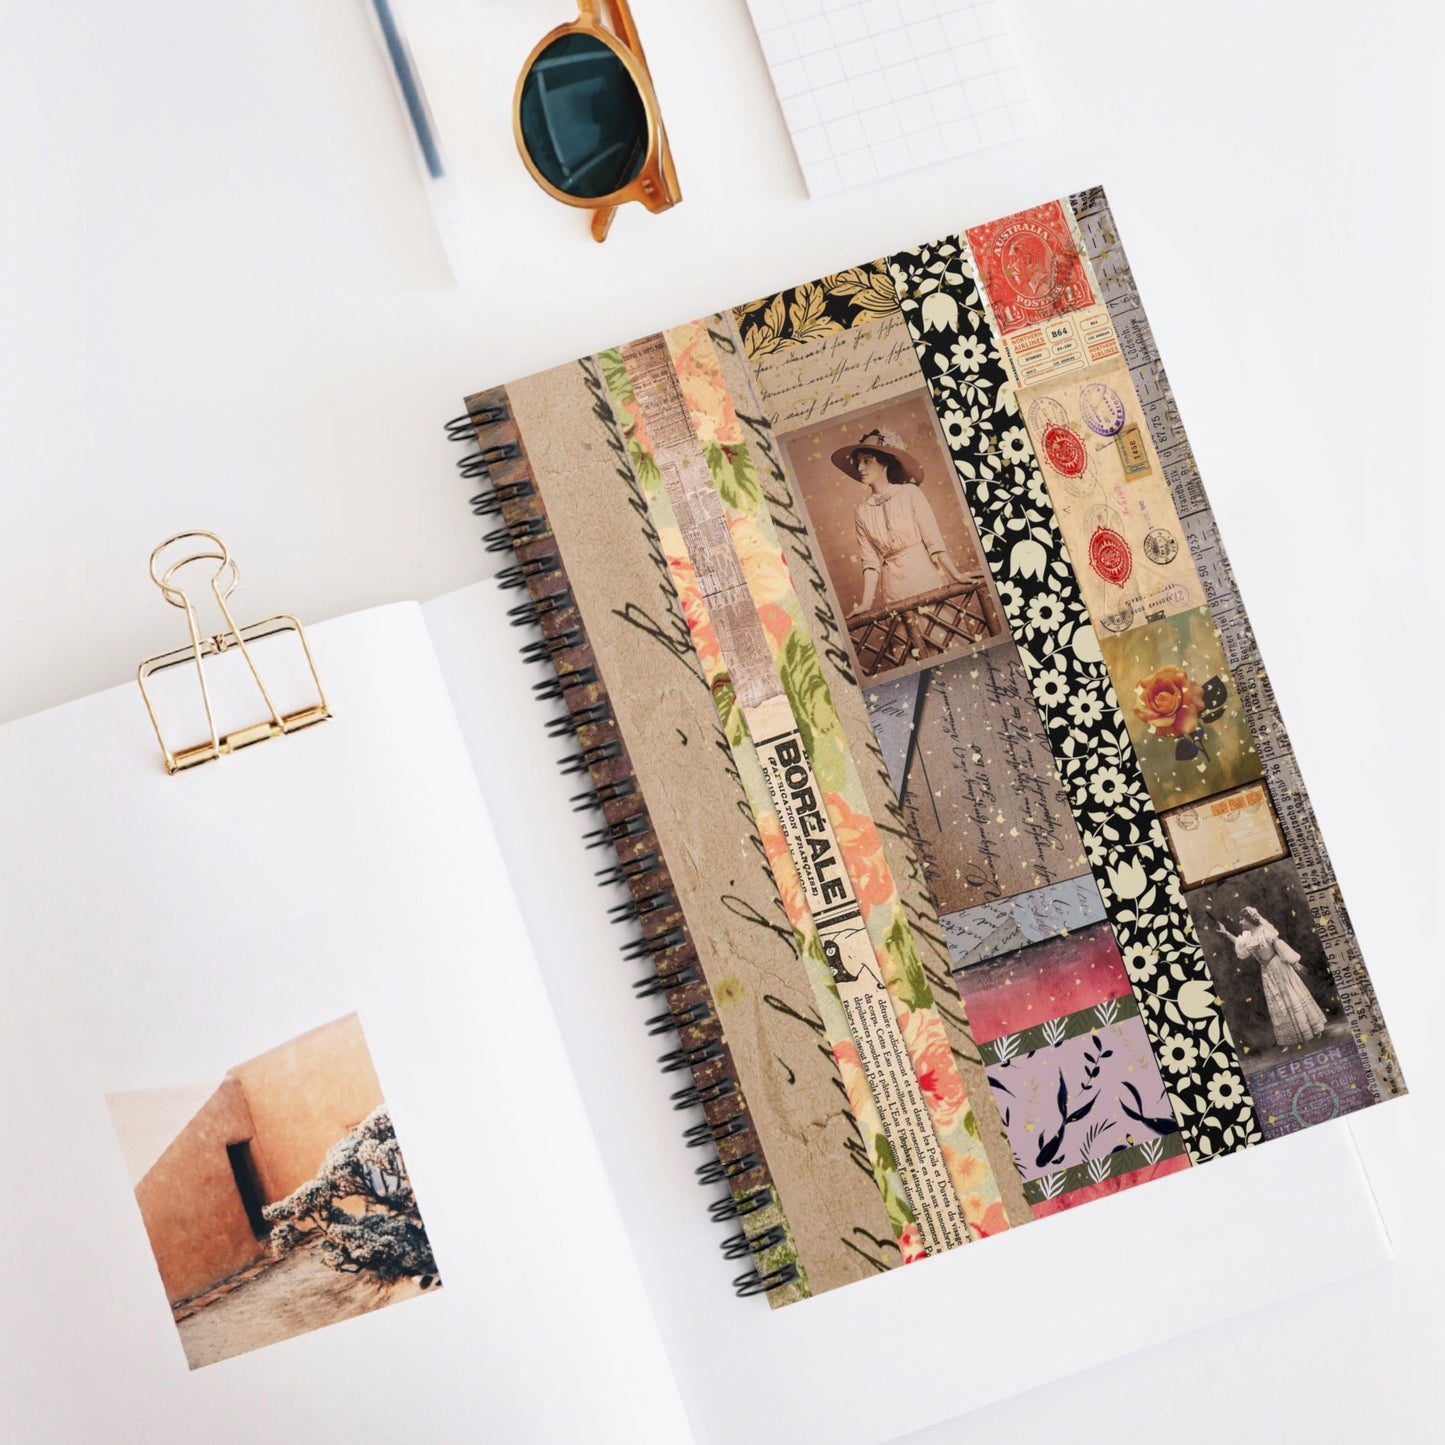 Ephemera Collage Spiral Notebook